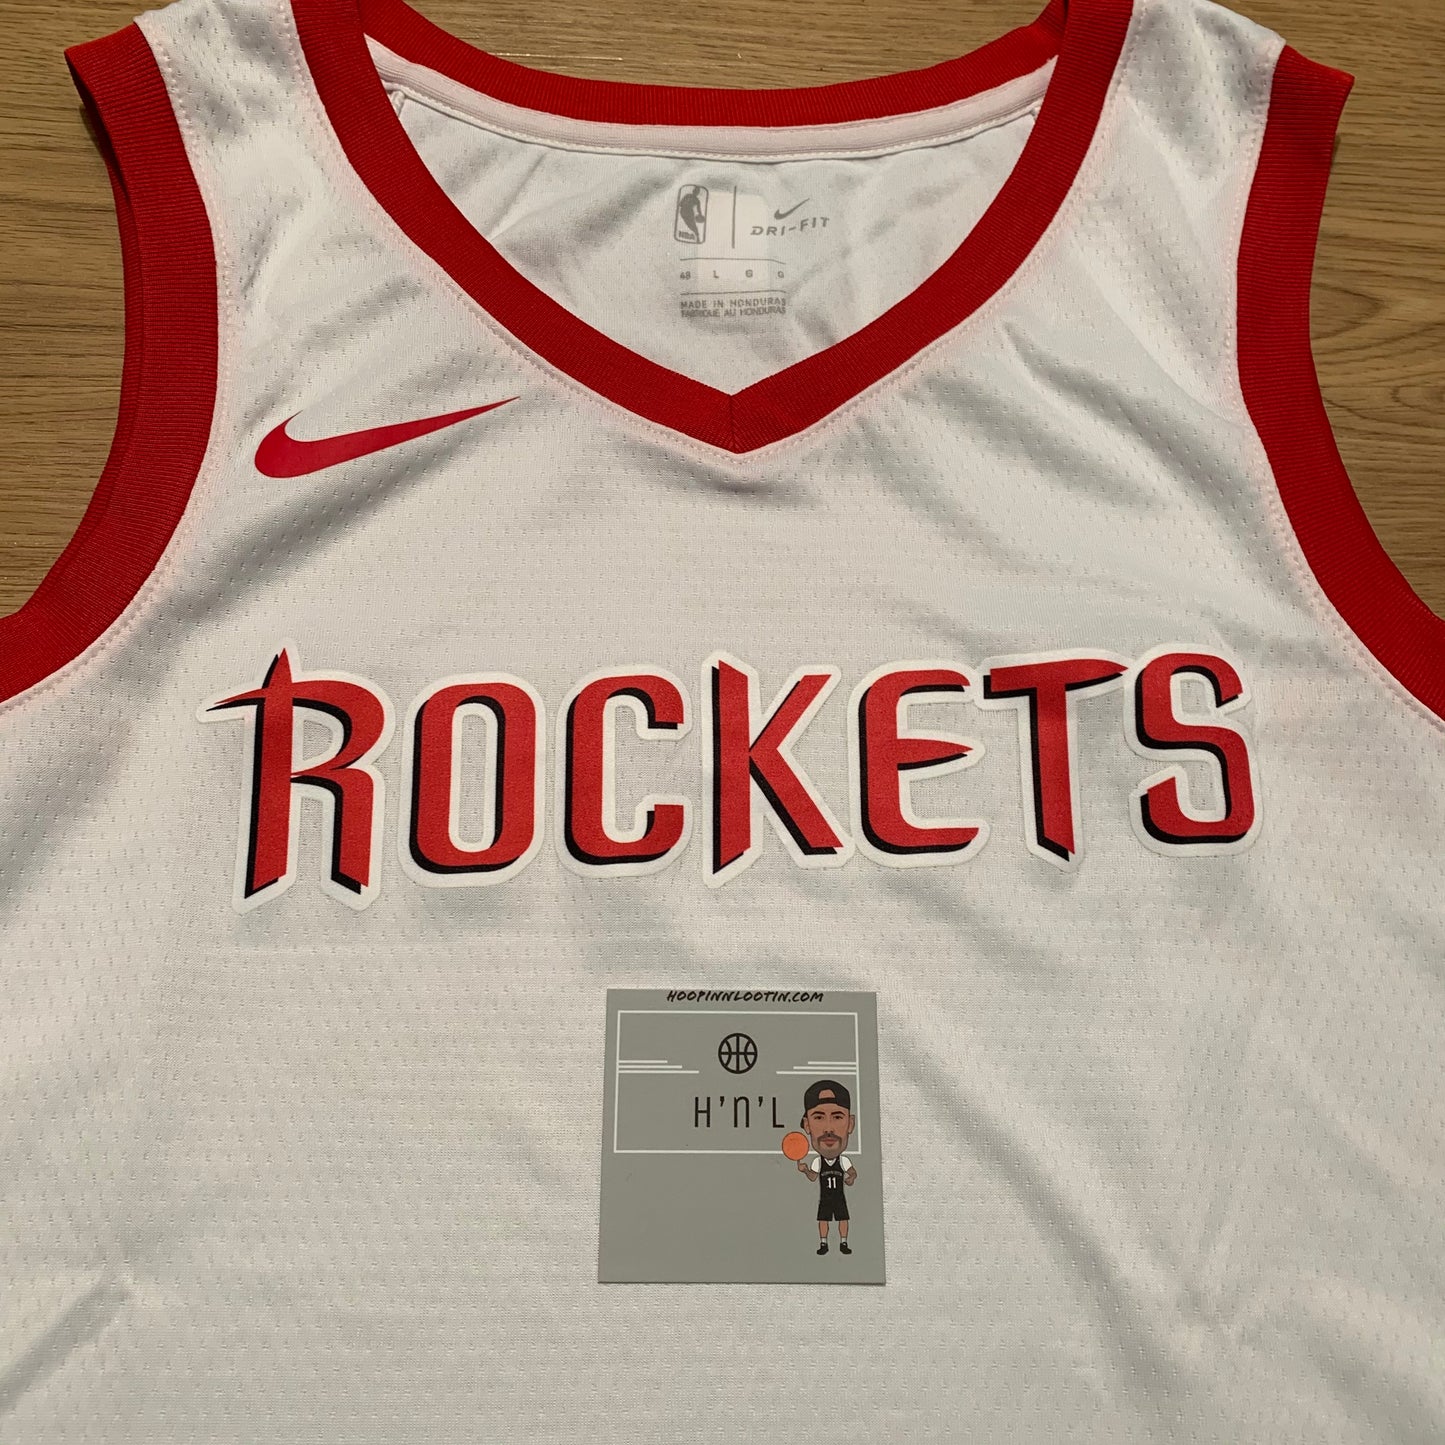 Houston Rockets Nike Jersey